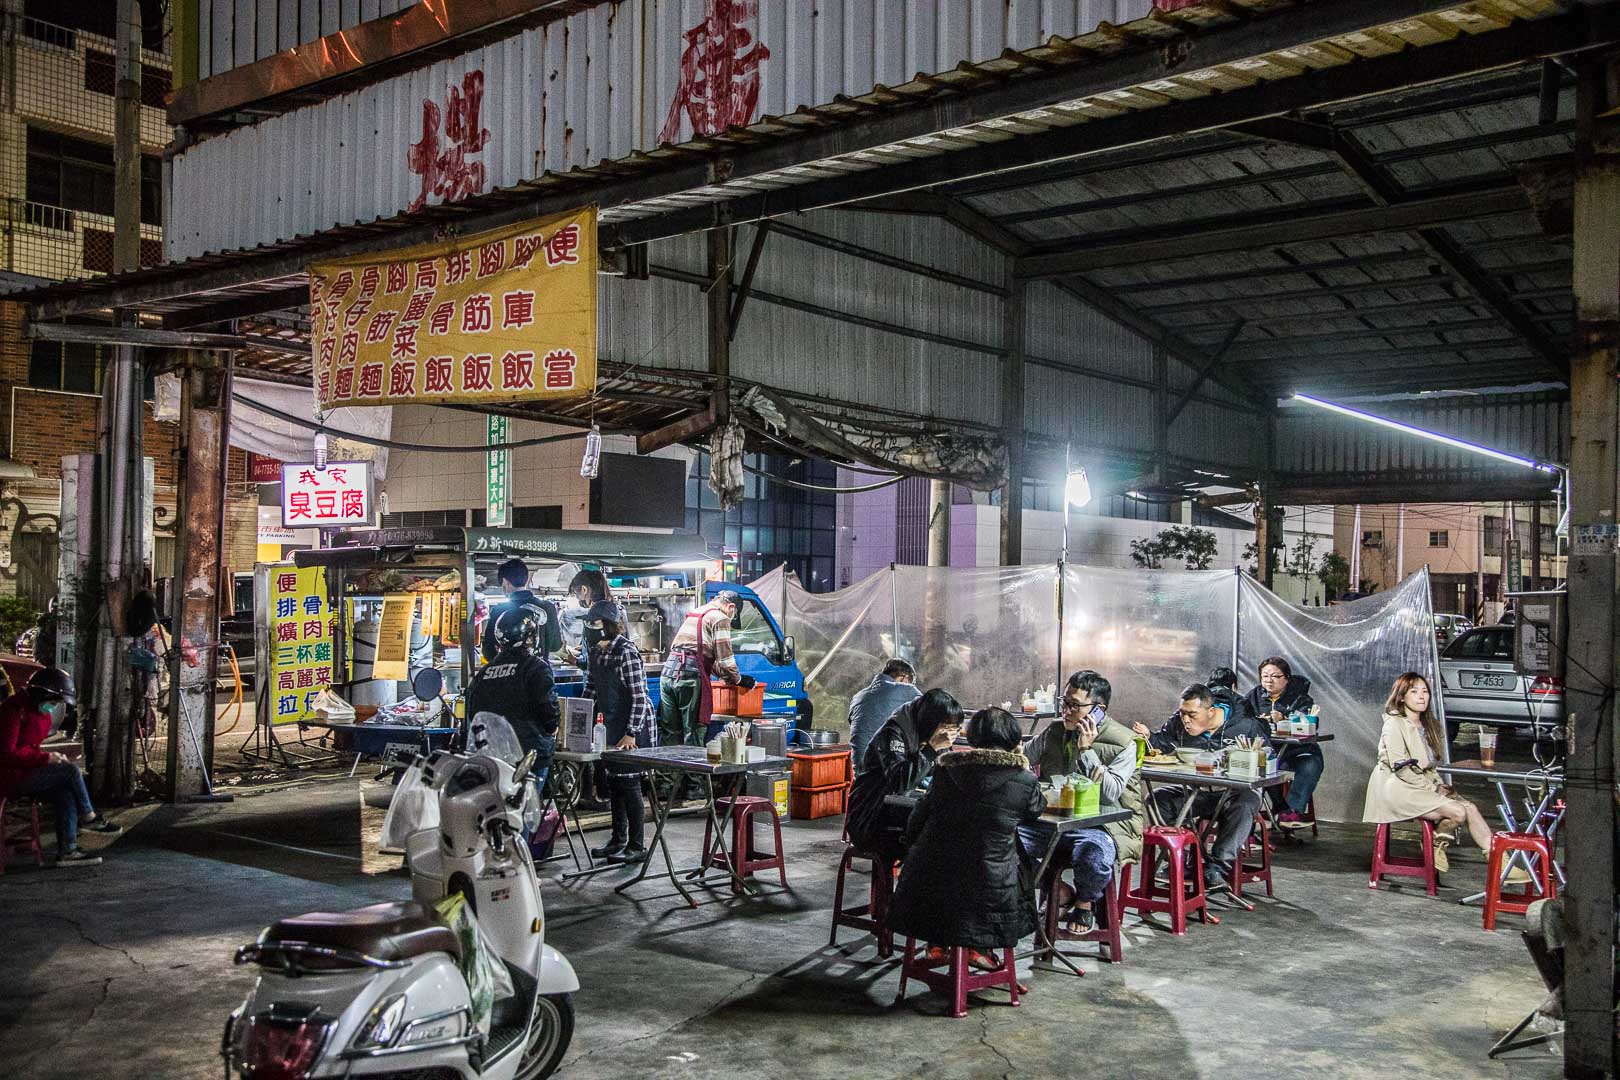 彰化,鹿港鎮,小吃,臭豆腐